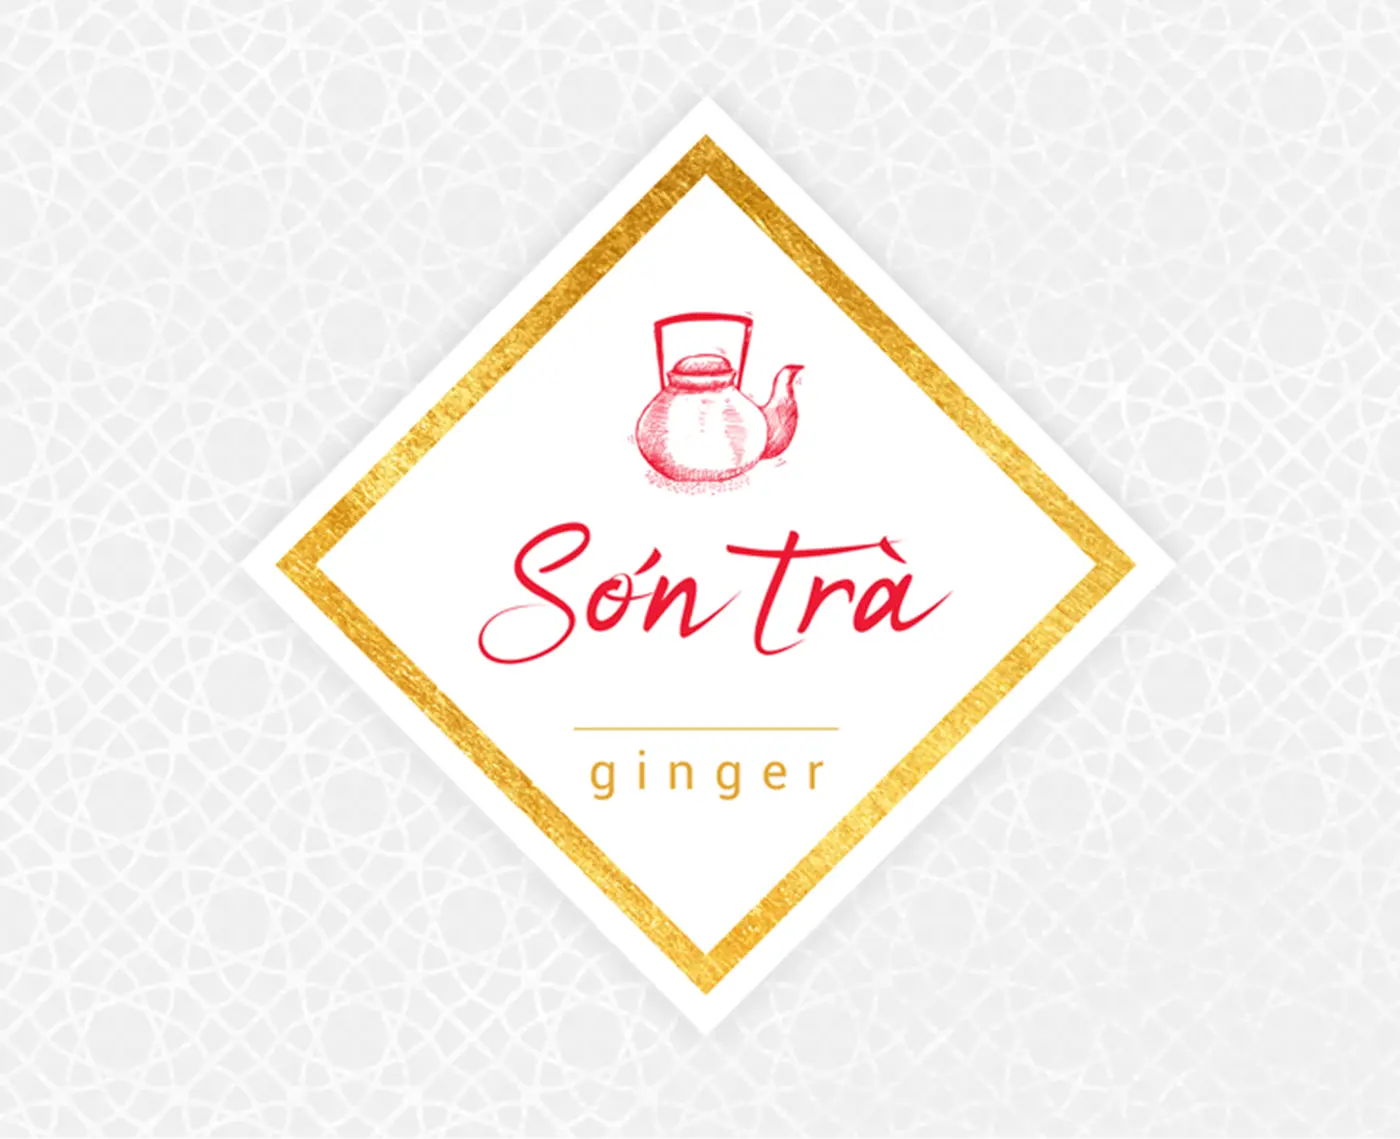 Logo de Son Tra avec une théière et des lettres dorées